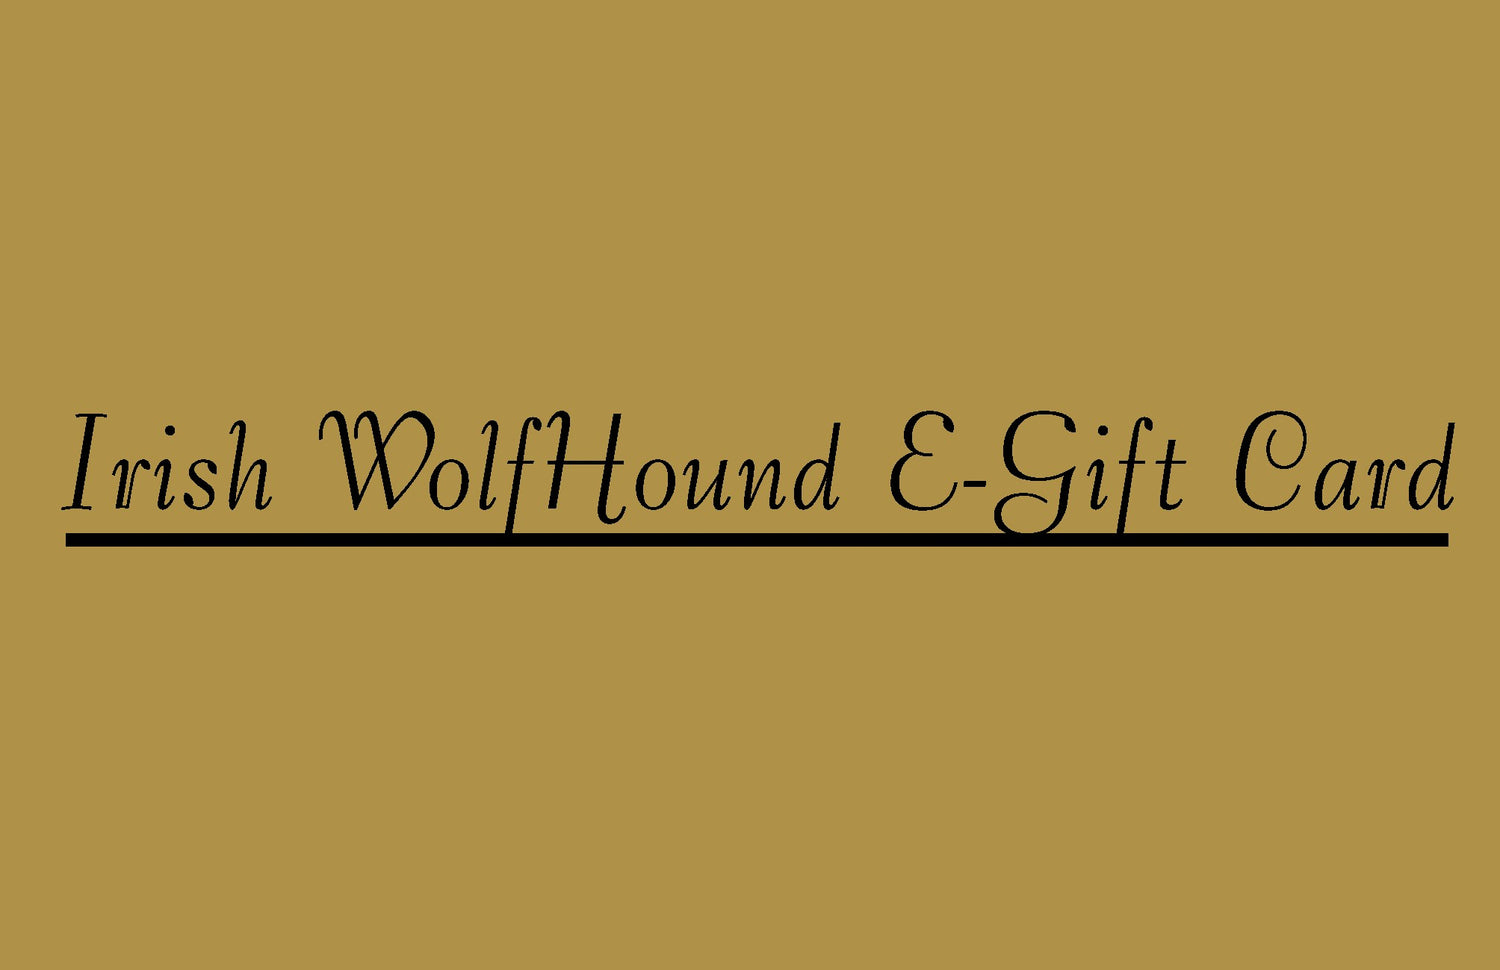 Irish Wolfhounds Gift Card